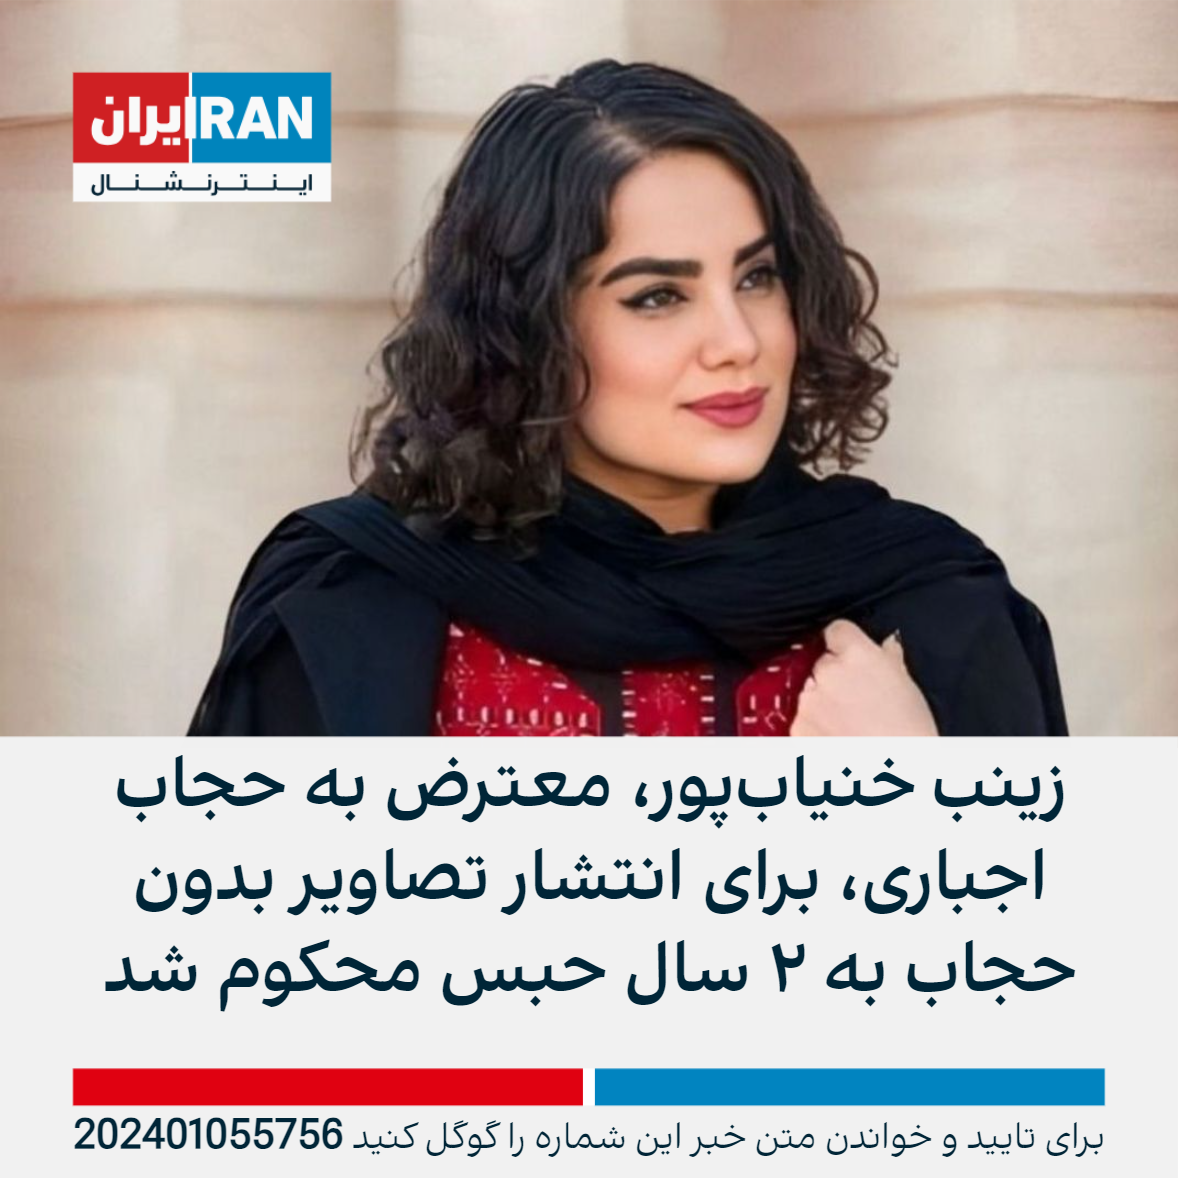 زینب خنیاب‌پور، معترض به حجاب اجباری، برای انتشار تصاویر بدون حجاب به ۲ سال حبس محکوم شد ایران